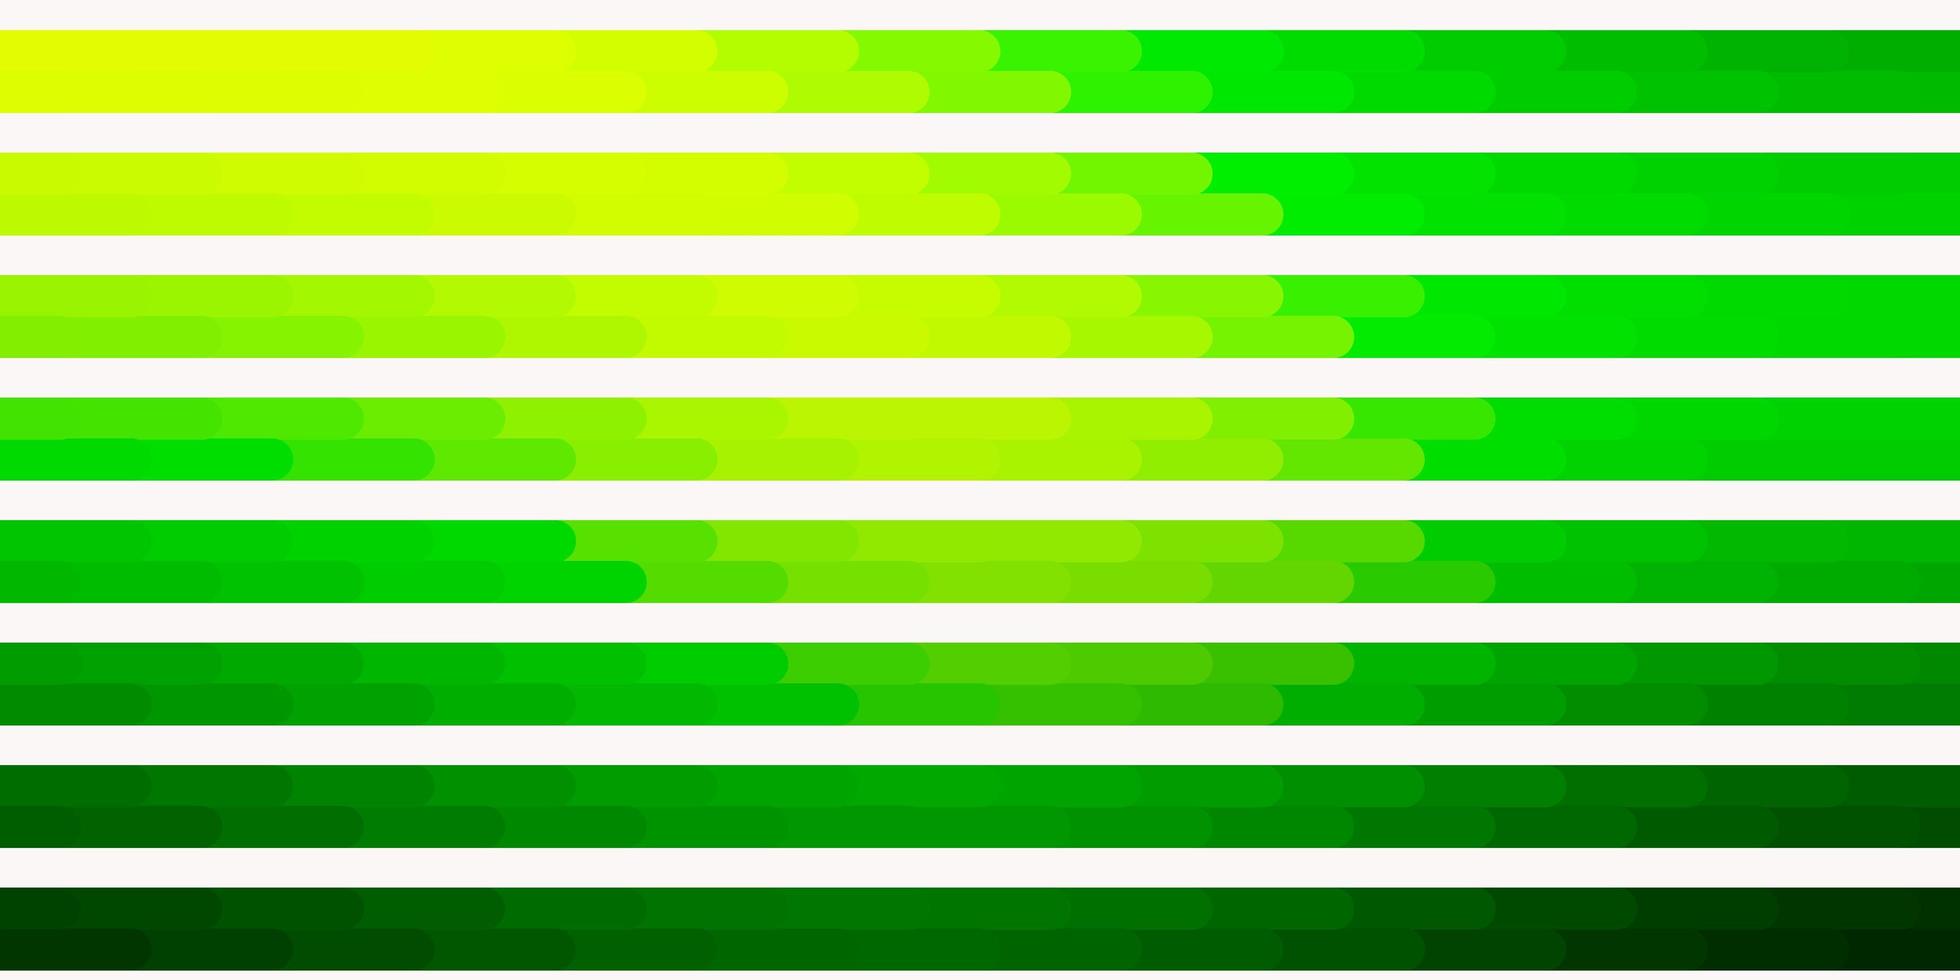 fond de vecteur vert foncé, jaune avec des lignes. illustration de dégradé coloré avec des lignes plates abstraites. design intelligent pour vos promotions.